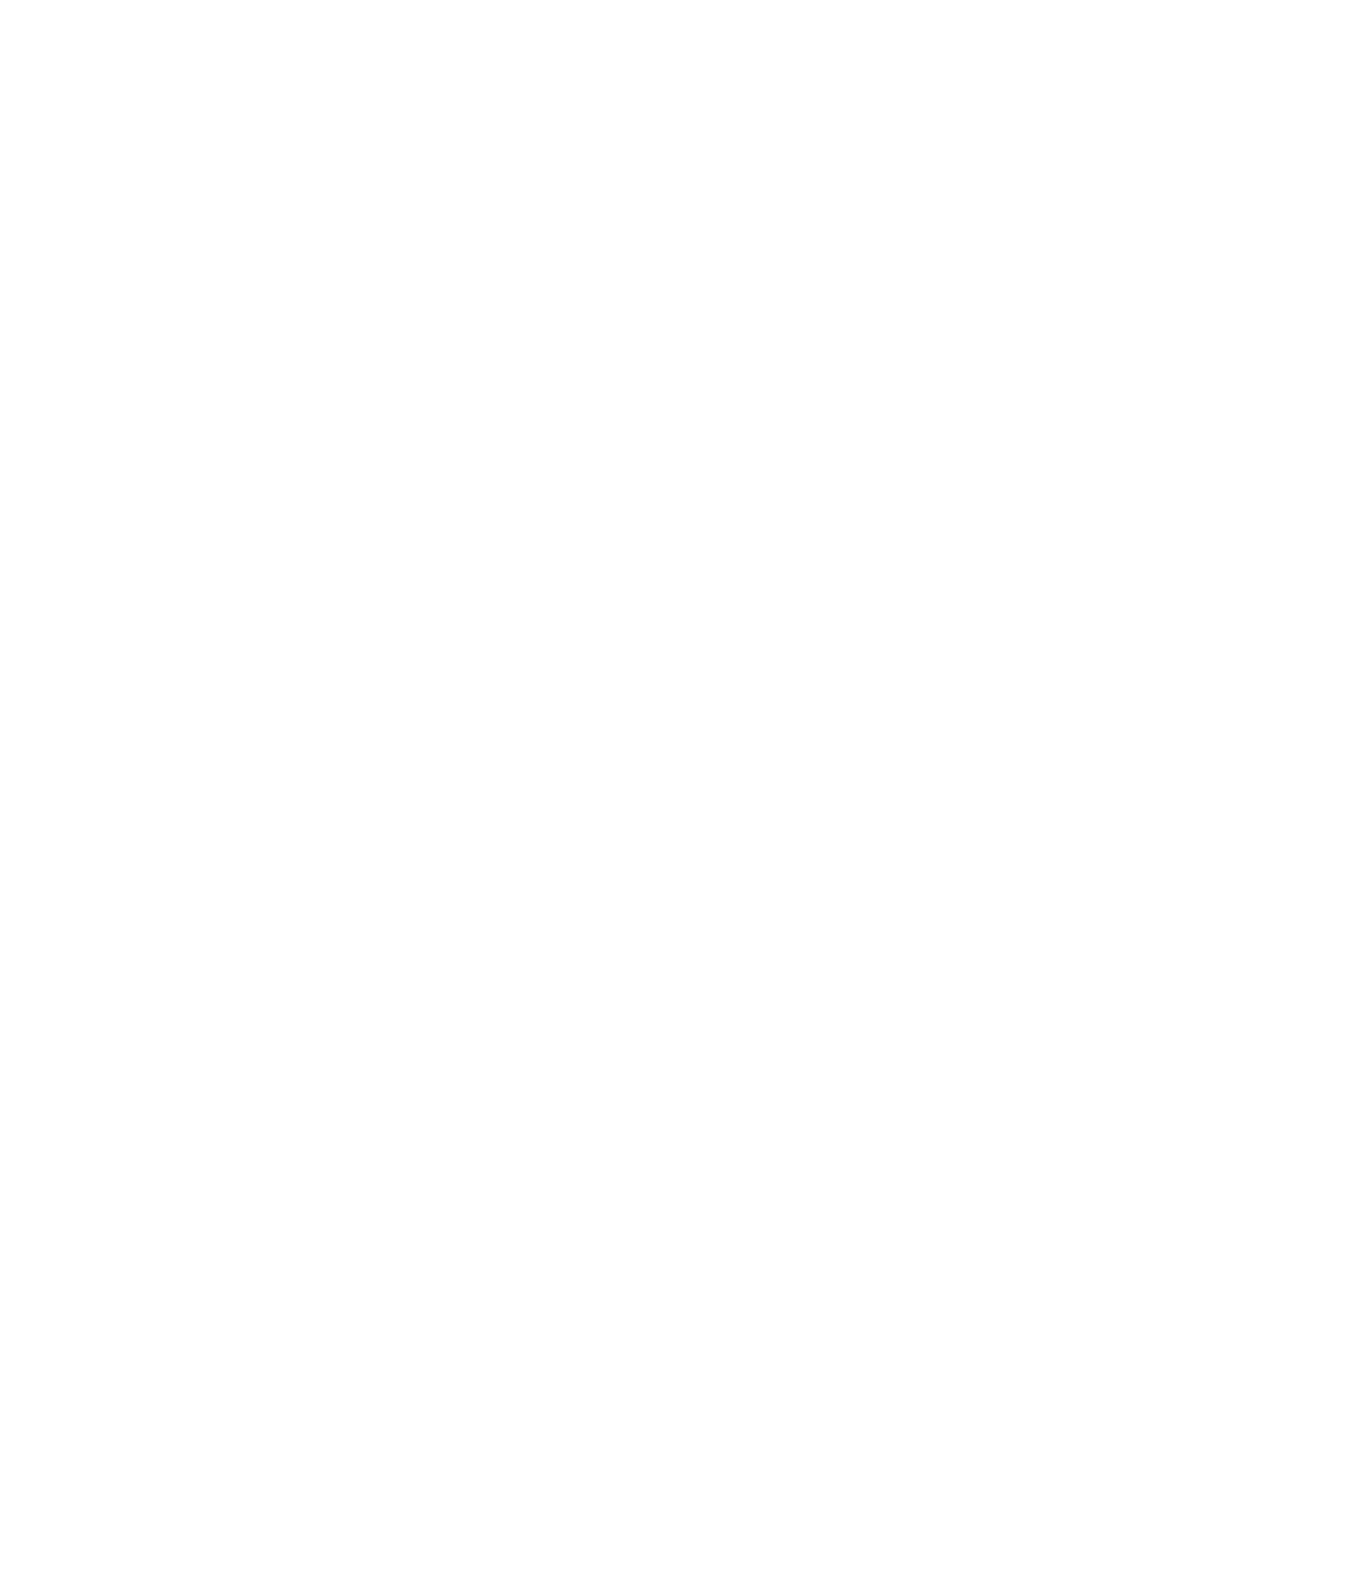 Leapmotor logo for dark backgrounds (transparent PNG)